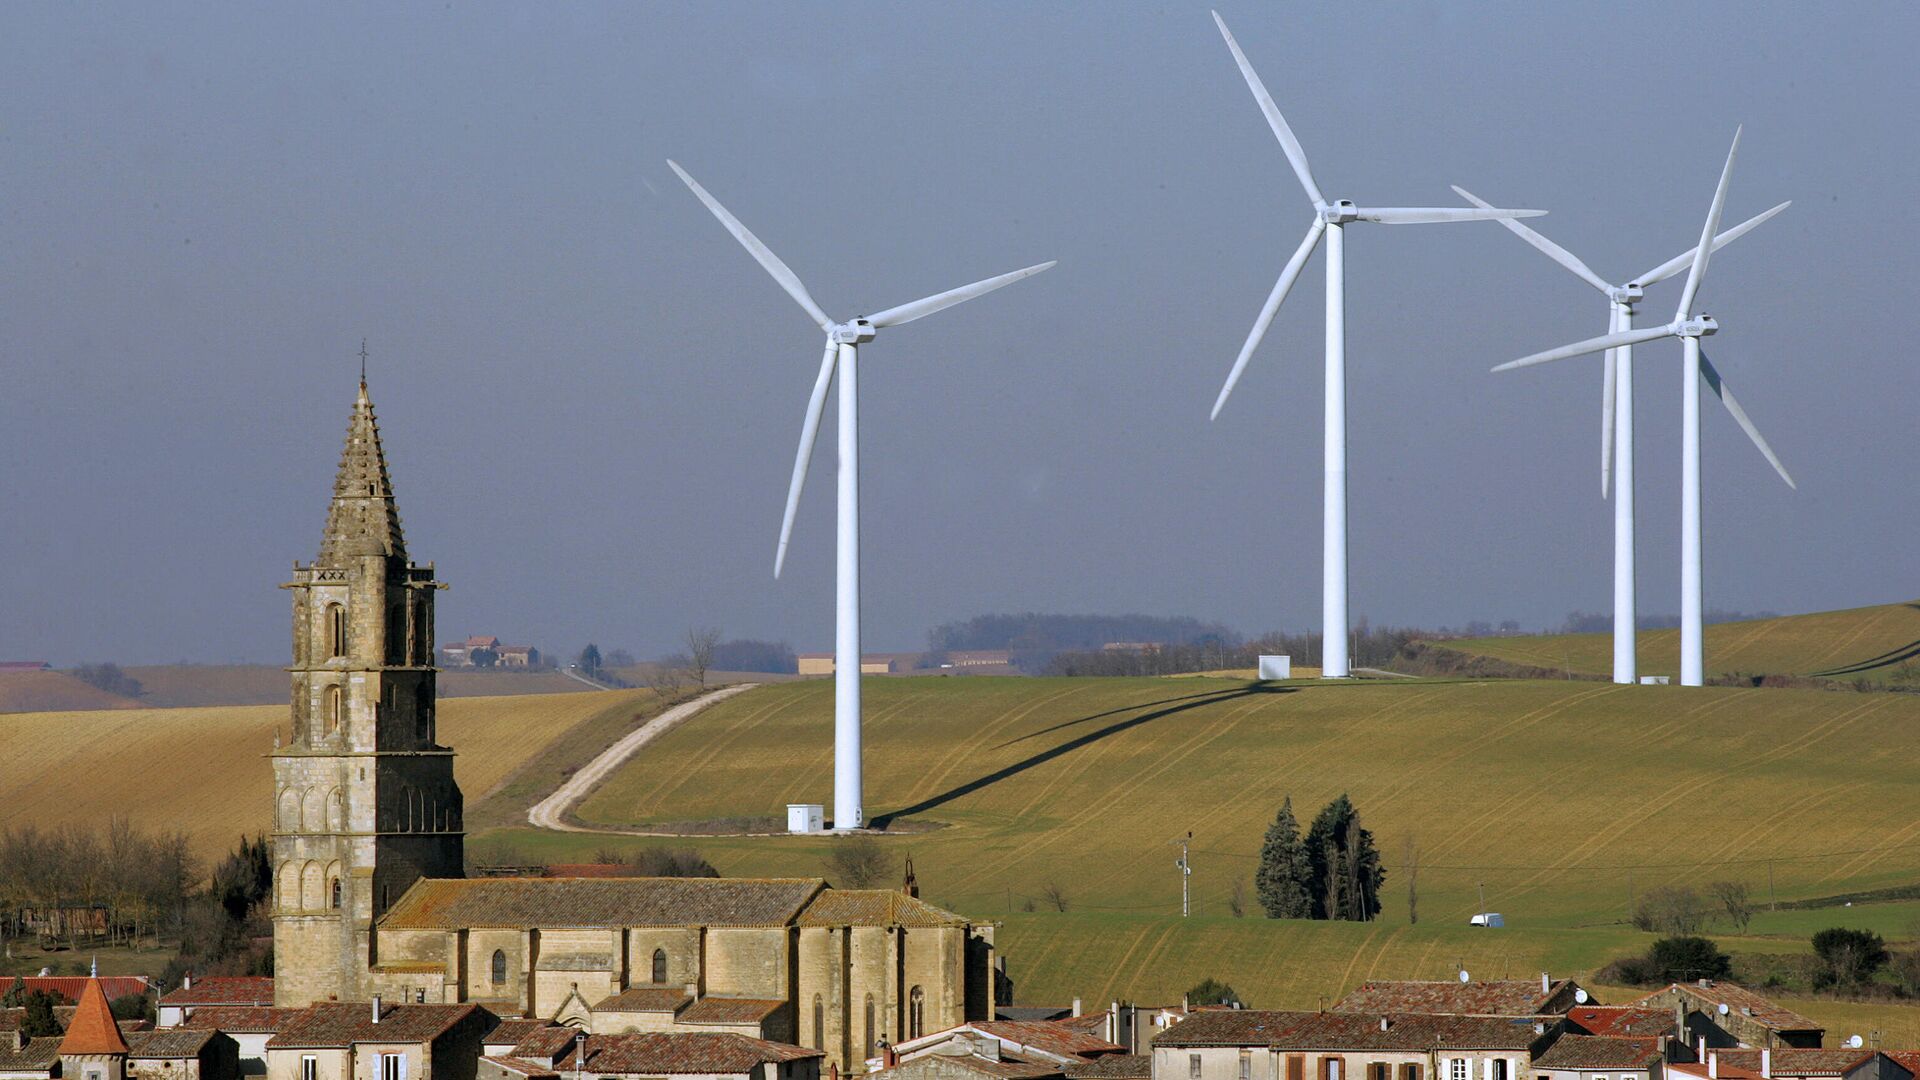 Des aérogénérateurs (éoliennes) sont visibles sur le site de Rivesaltes près de Perpignan, le 25 janvier 2006. - Sputnik Afrique, 1920, 10.10.2021